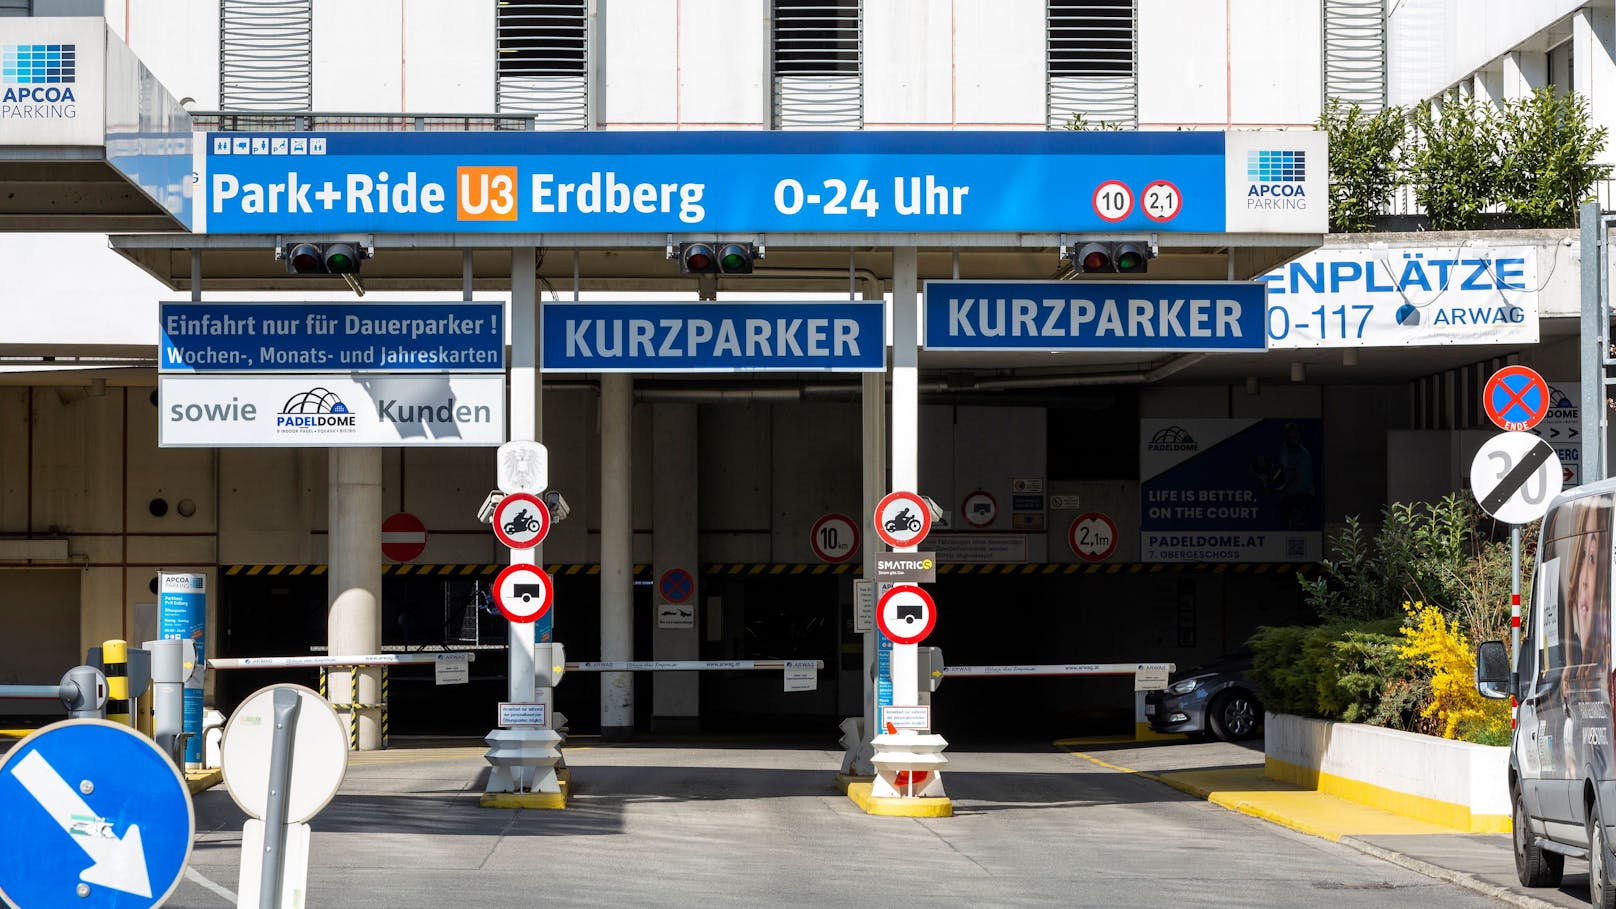 Auch in der Station Erdberg (U3) wird für Garageparker nun mehr Gebühr fällig.